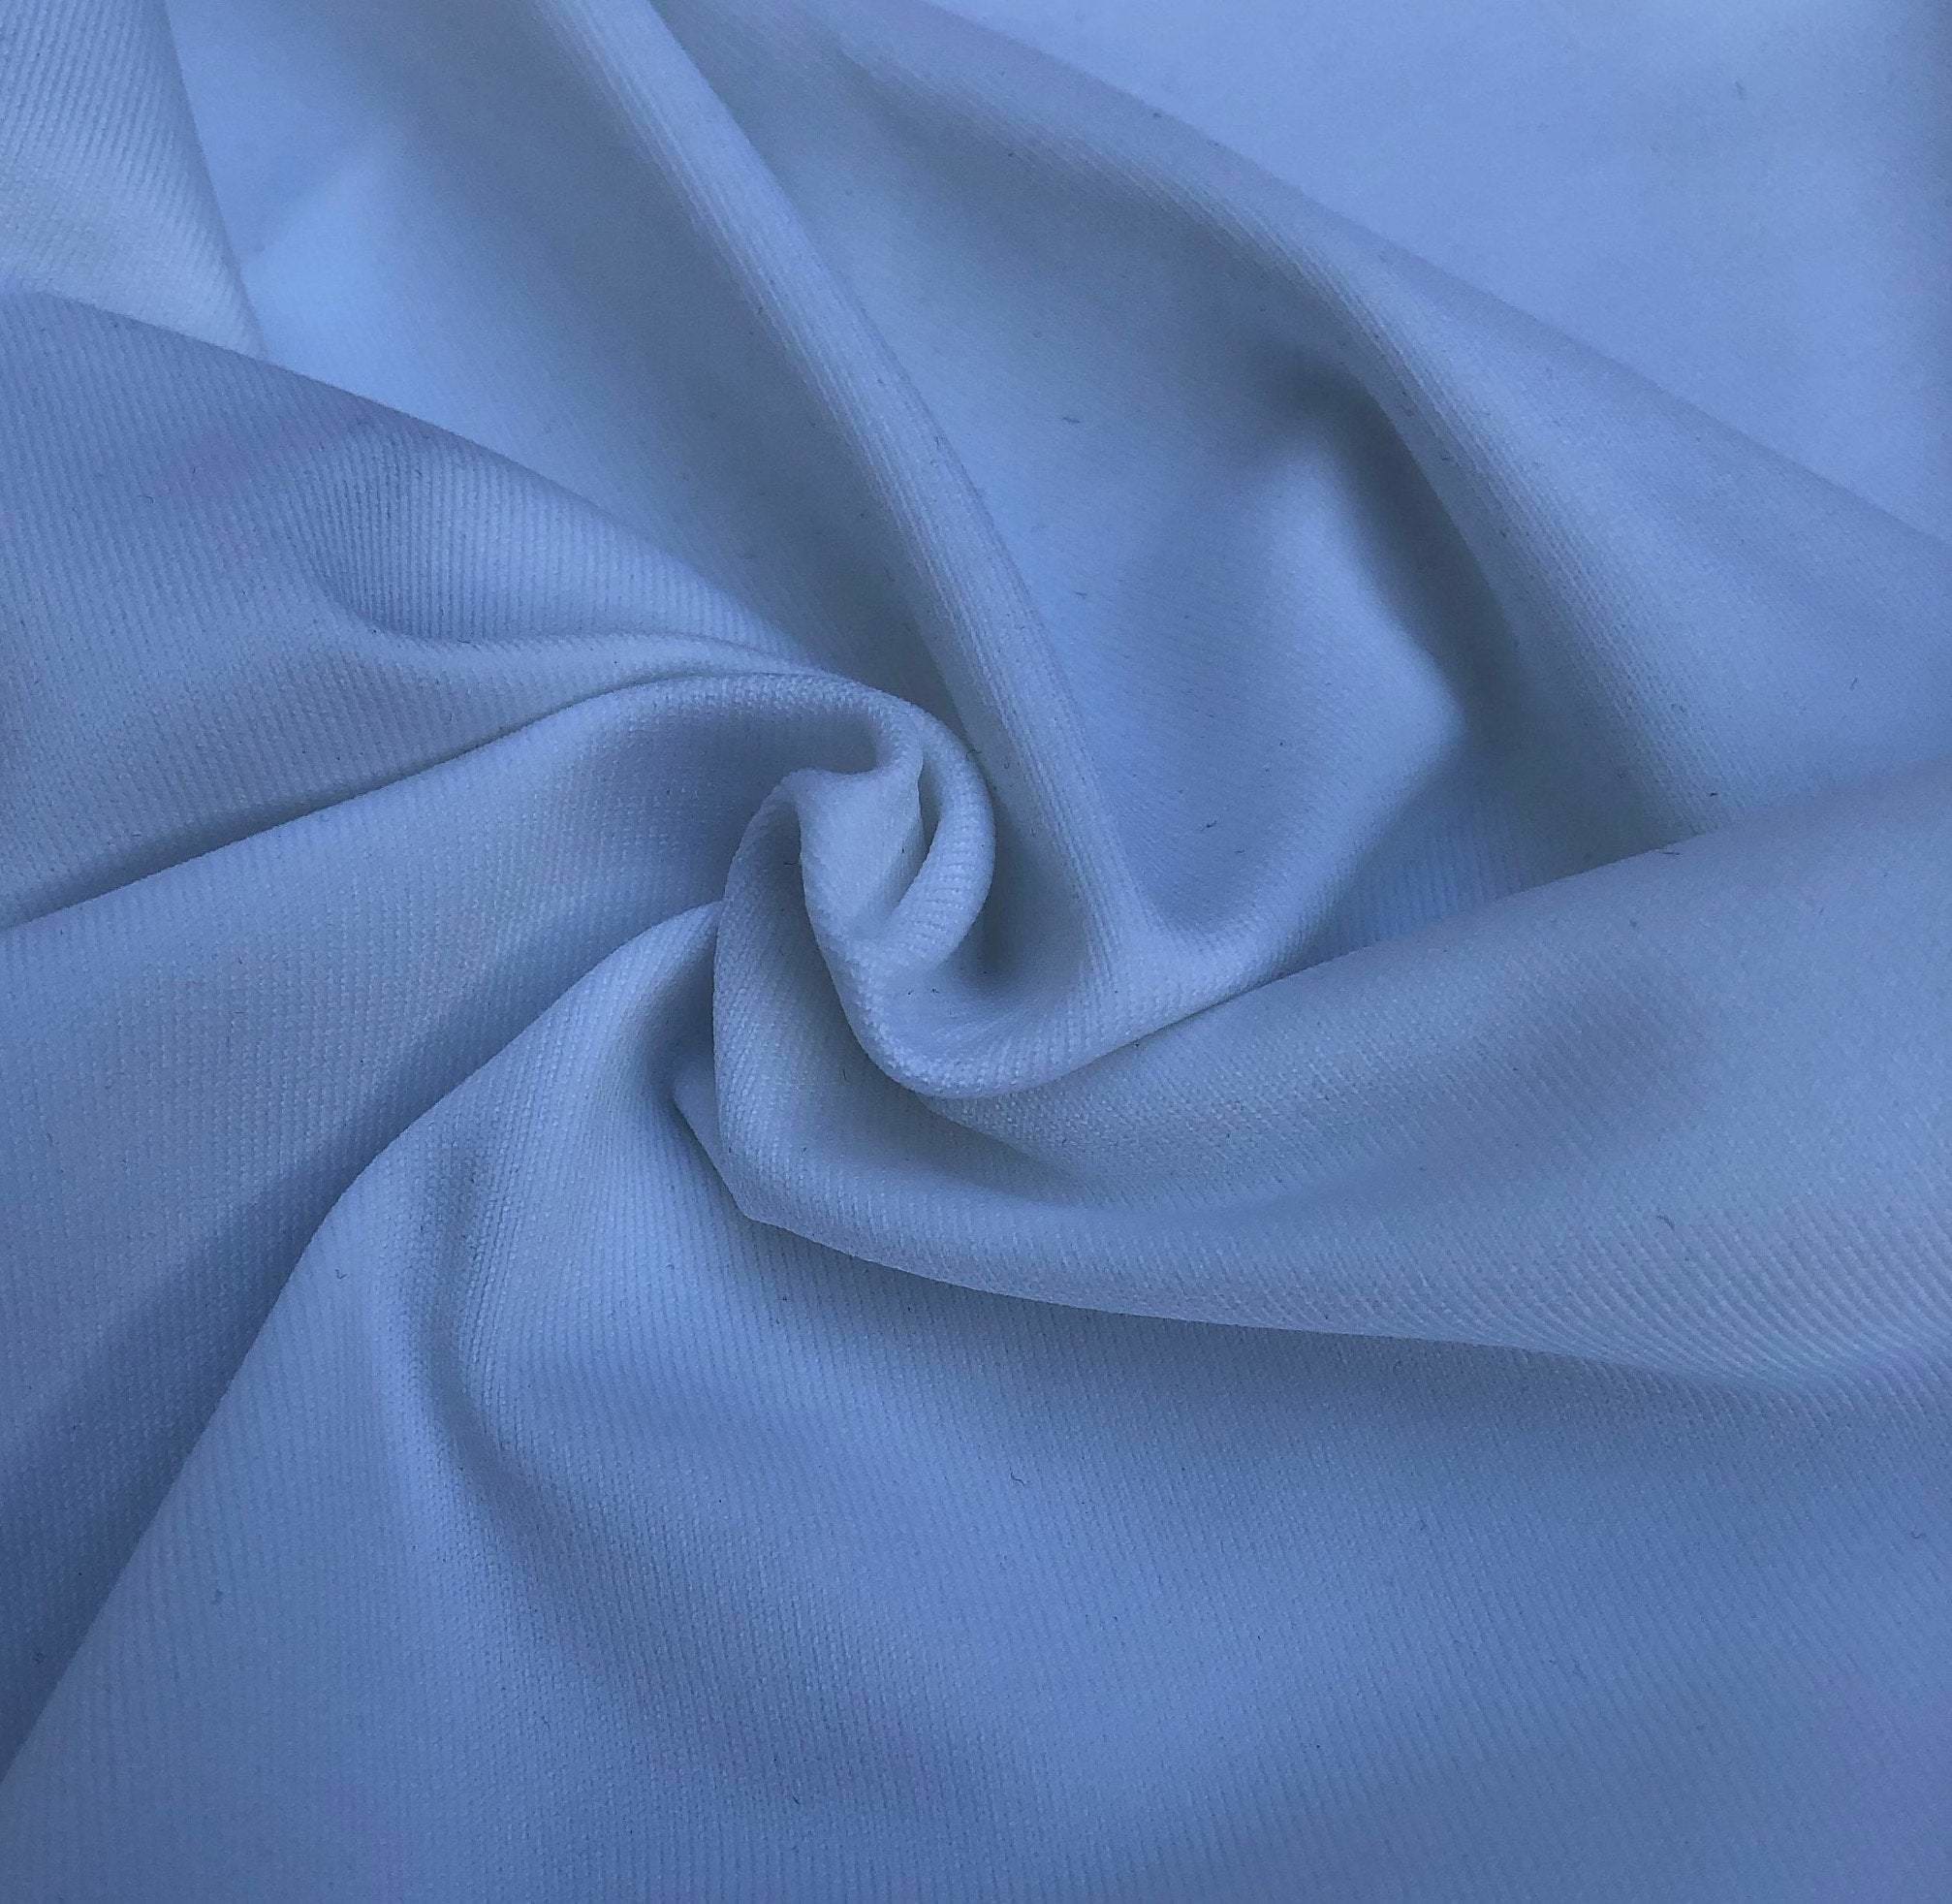 58 White Nylon Spandex Elastane Lycra Blend Knit Fabric By the